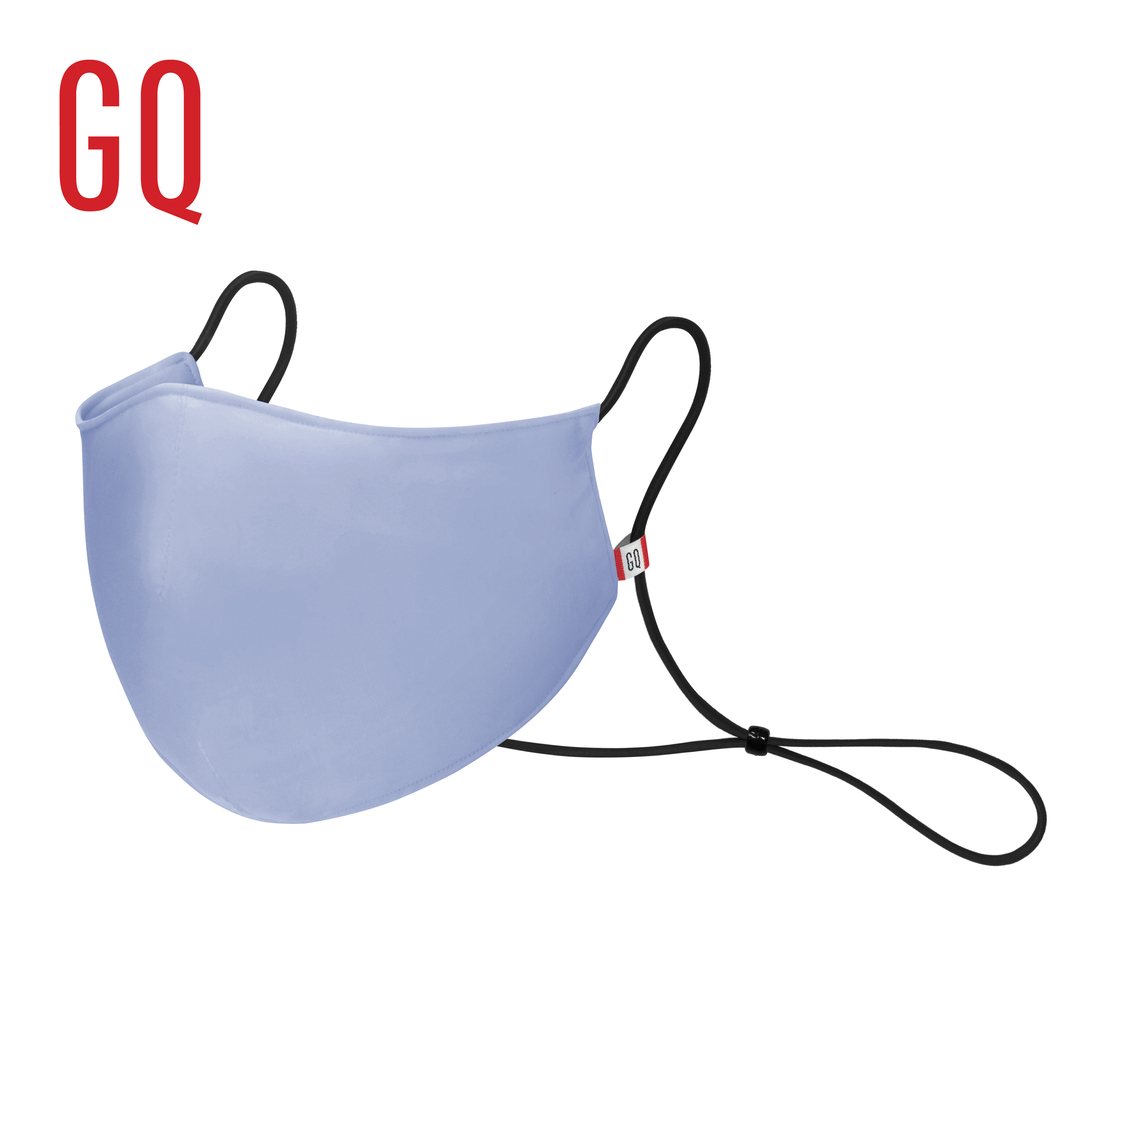 [ซื้อ 1 แถม 1] GQWhite Mask หน้ากากผ้าสะท้อนน้ำ สีฟ้า